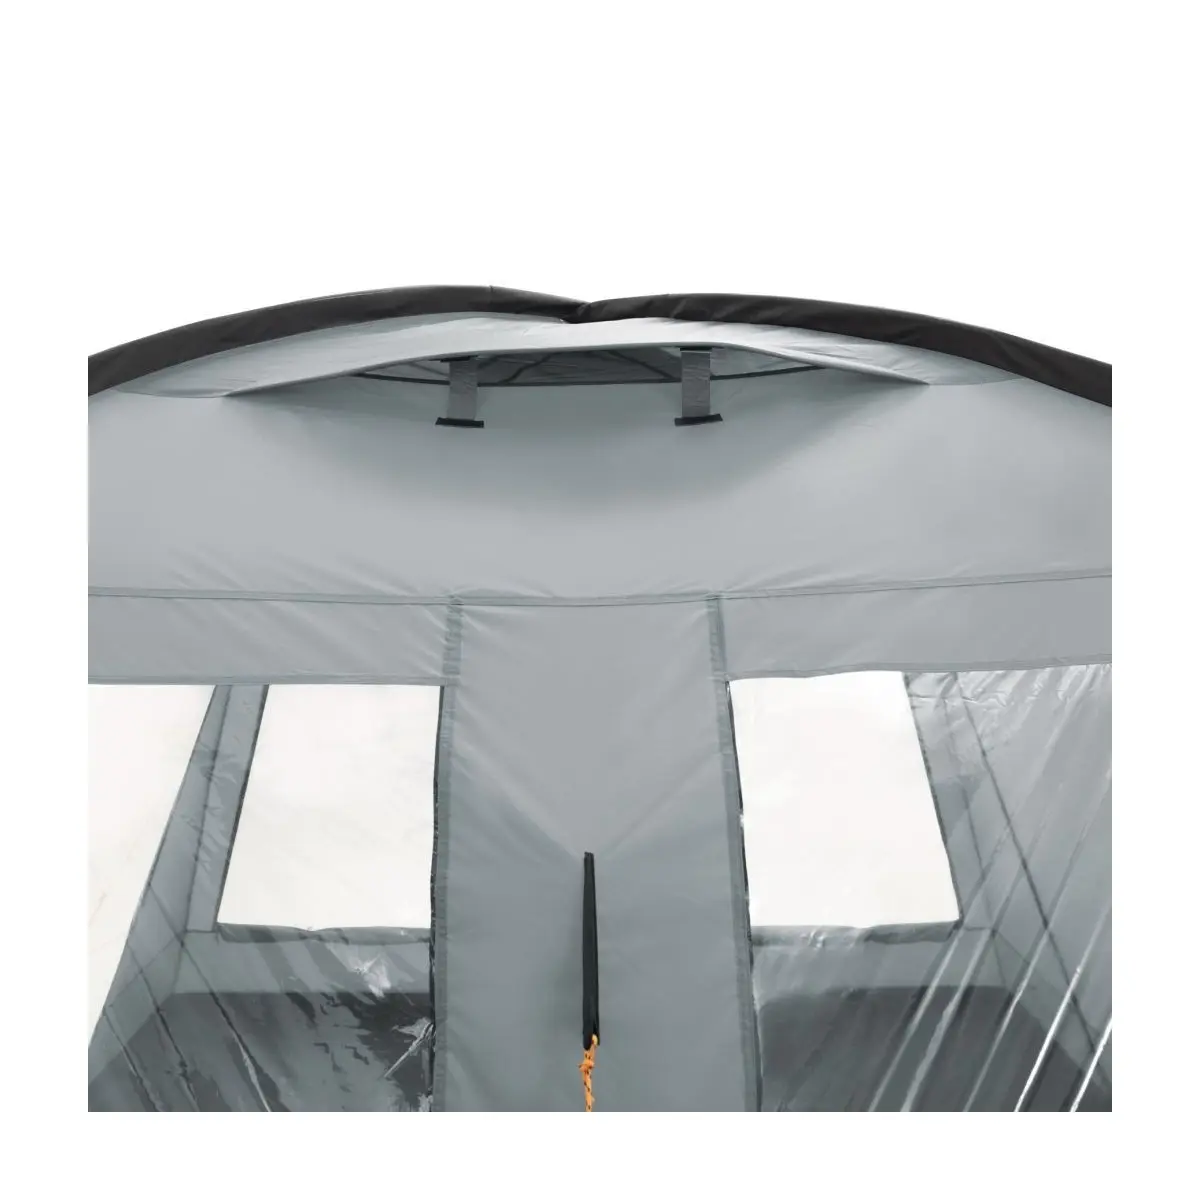 Pavilon nappali sátor - 290 x 290 x 200 cm